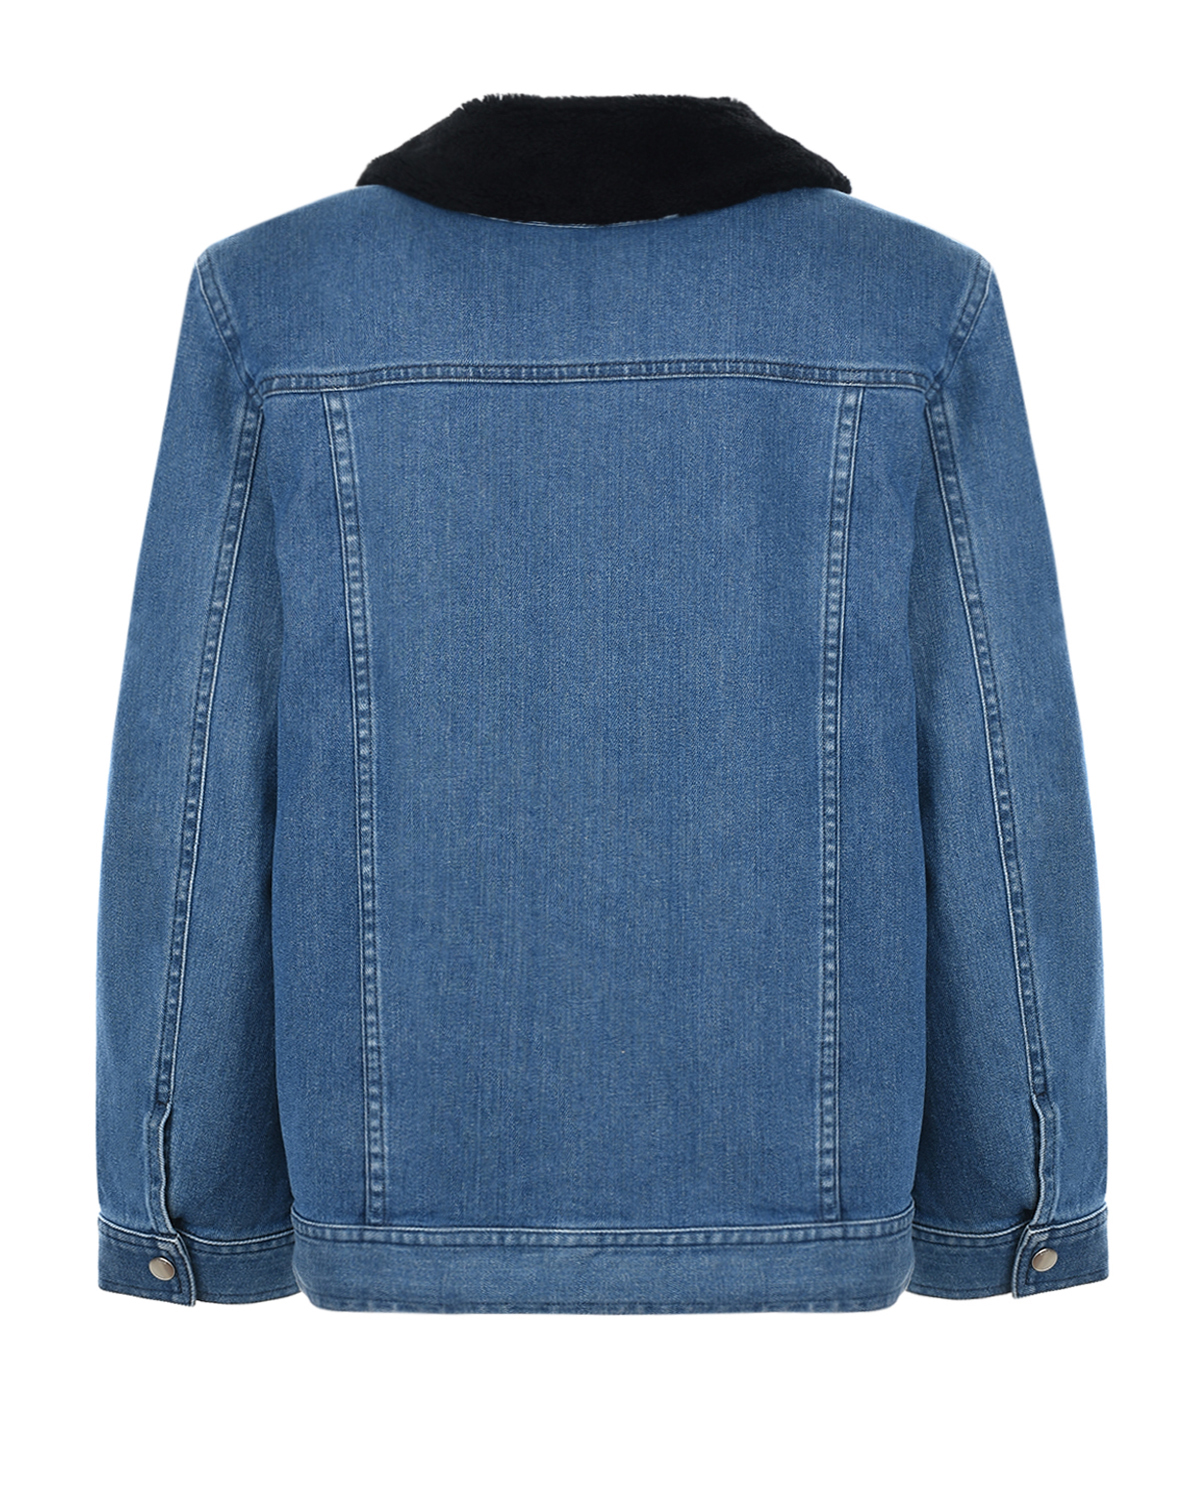 Джинсовая куртка с меховым воротником и подкладкой Dior детская, размер 158, цвет синий - фото 3